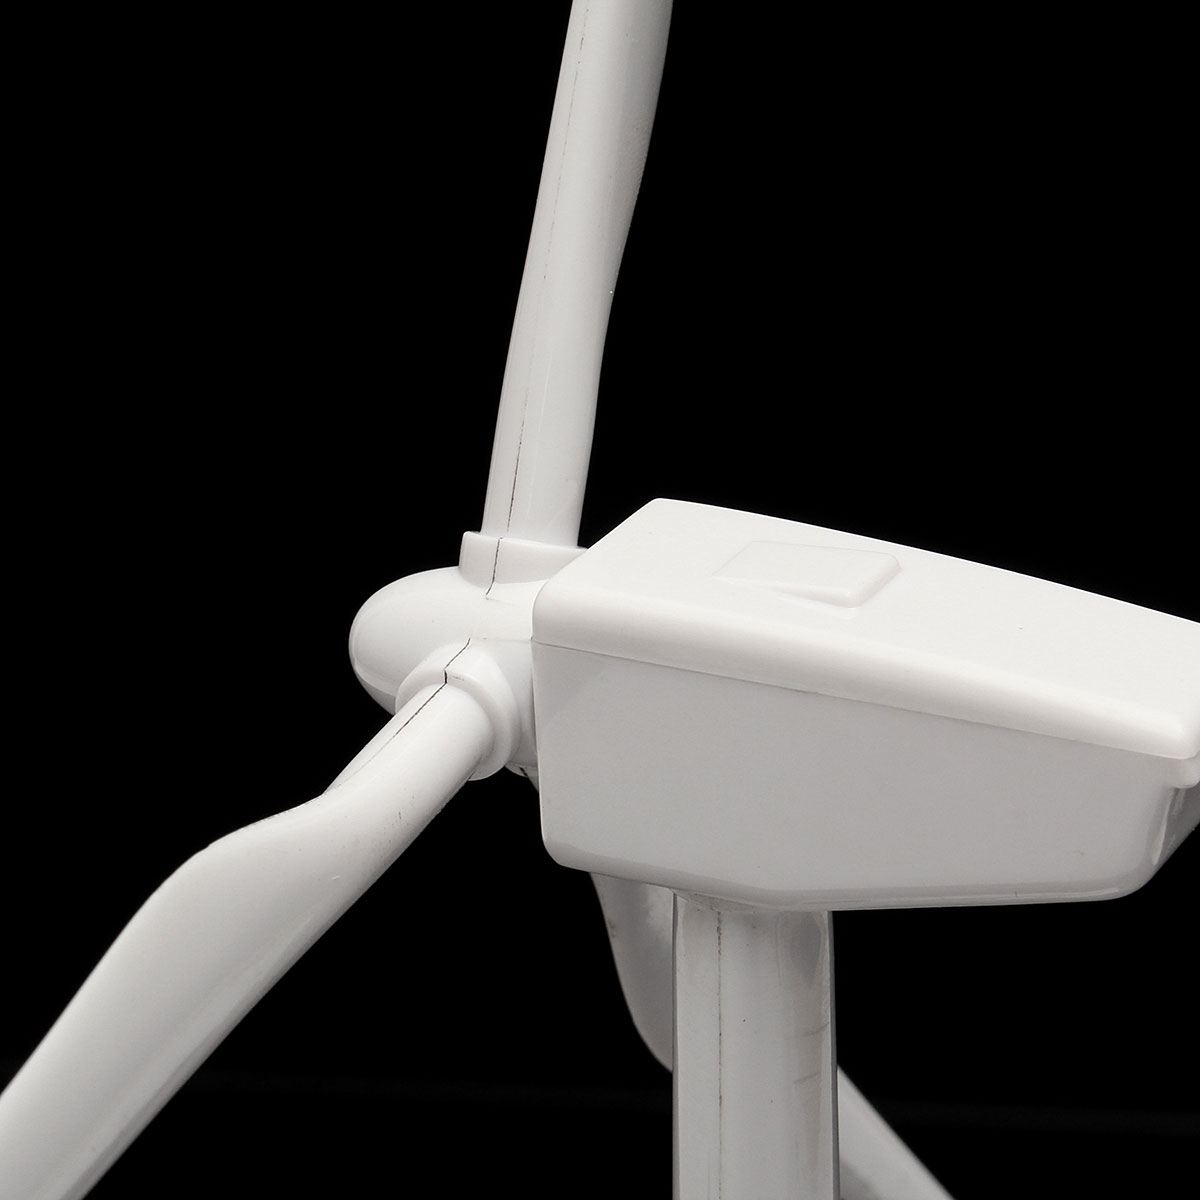 Plastic-Solar-Powered-Windmill-Wind-Mill-Turbine-Teaching-Tool--Desktop-Display-Tray-Holder-1059506-3